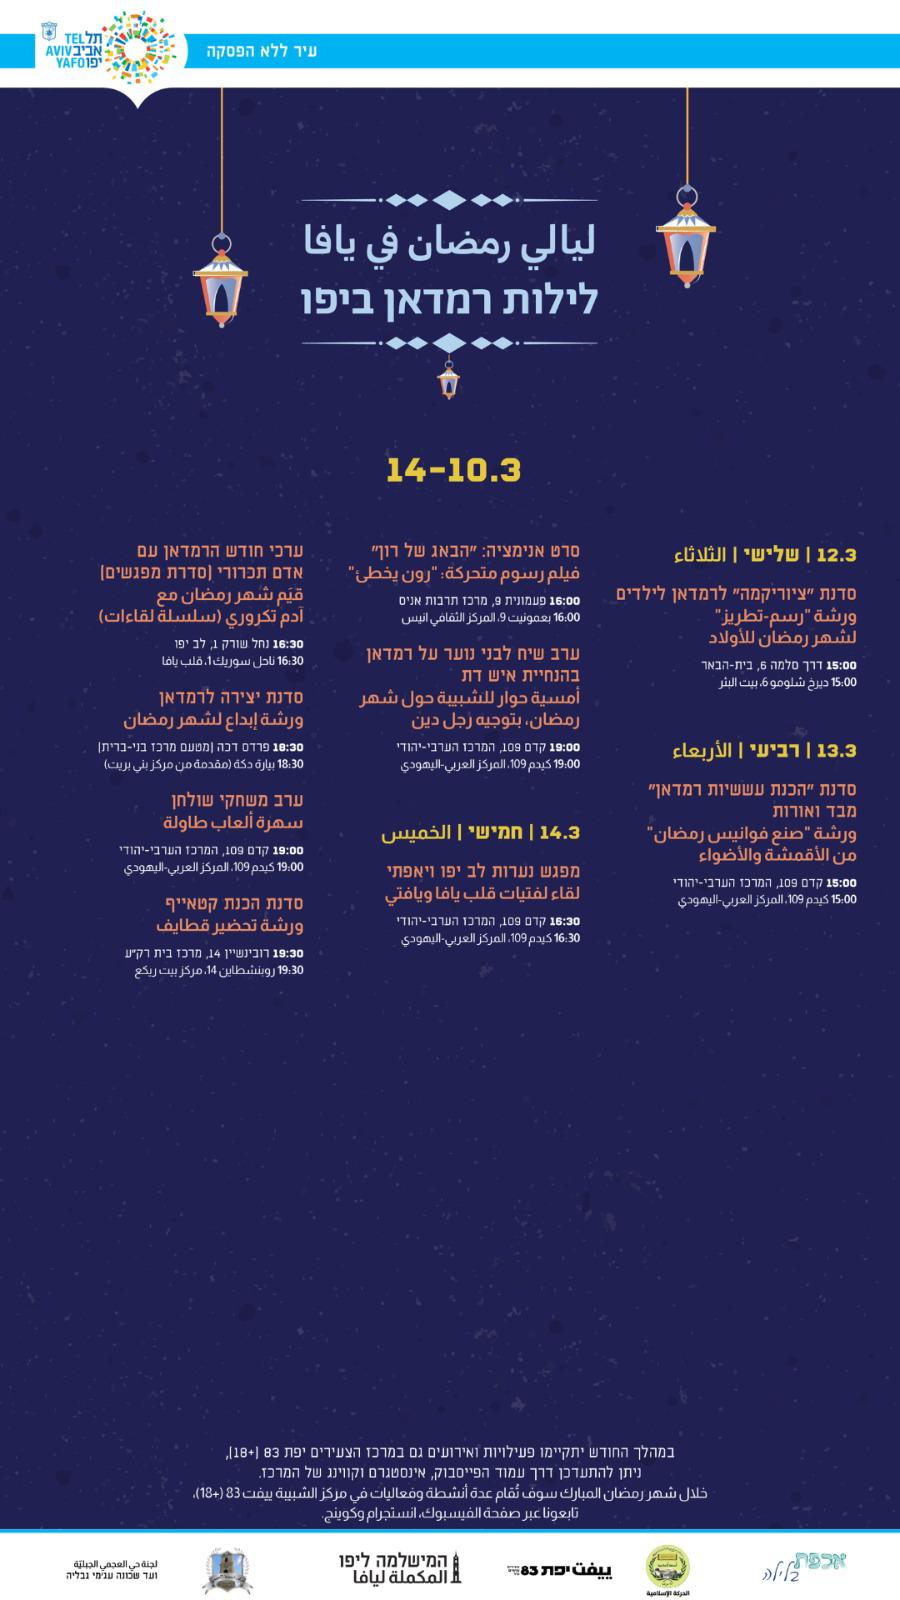  ليالي رمضان في يافا .. فعاليات شيّقة طيلة أيام الشهر الفضيل 